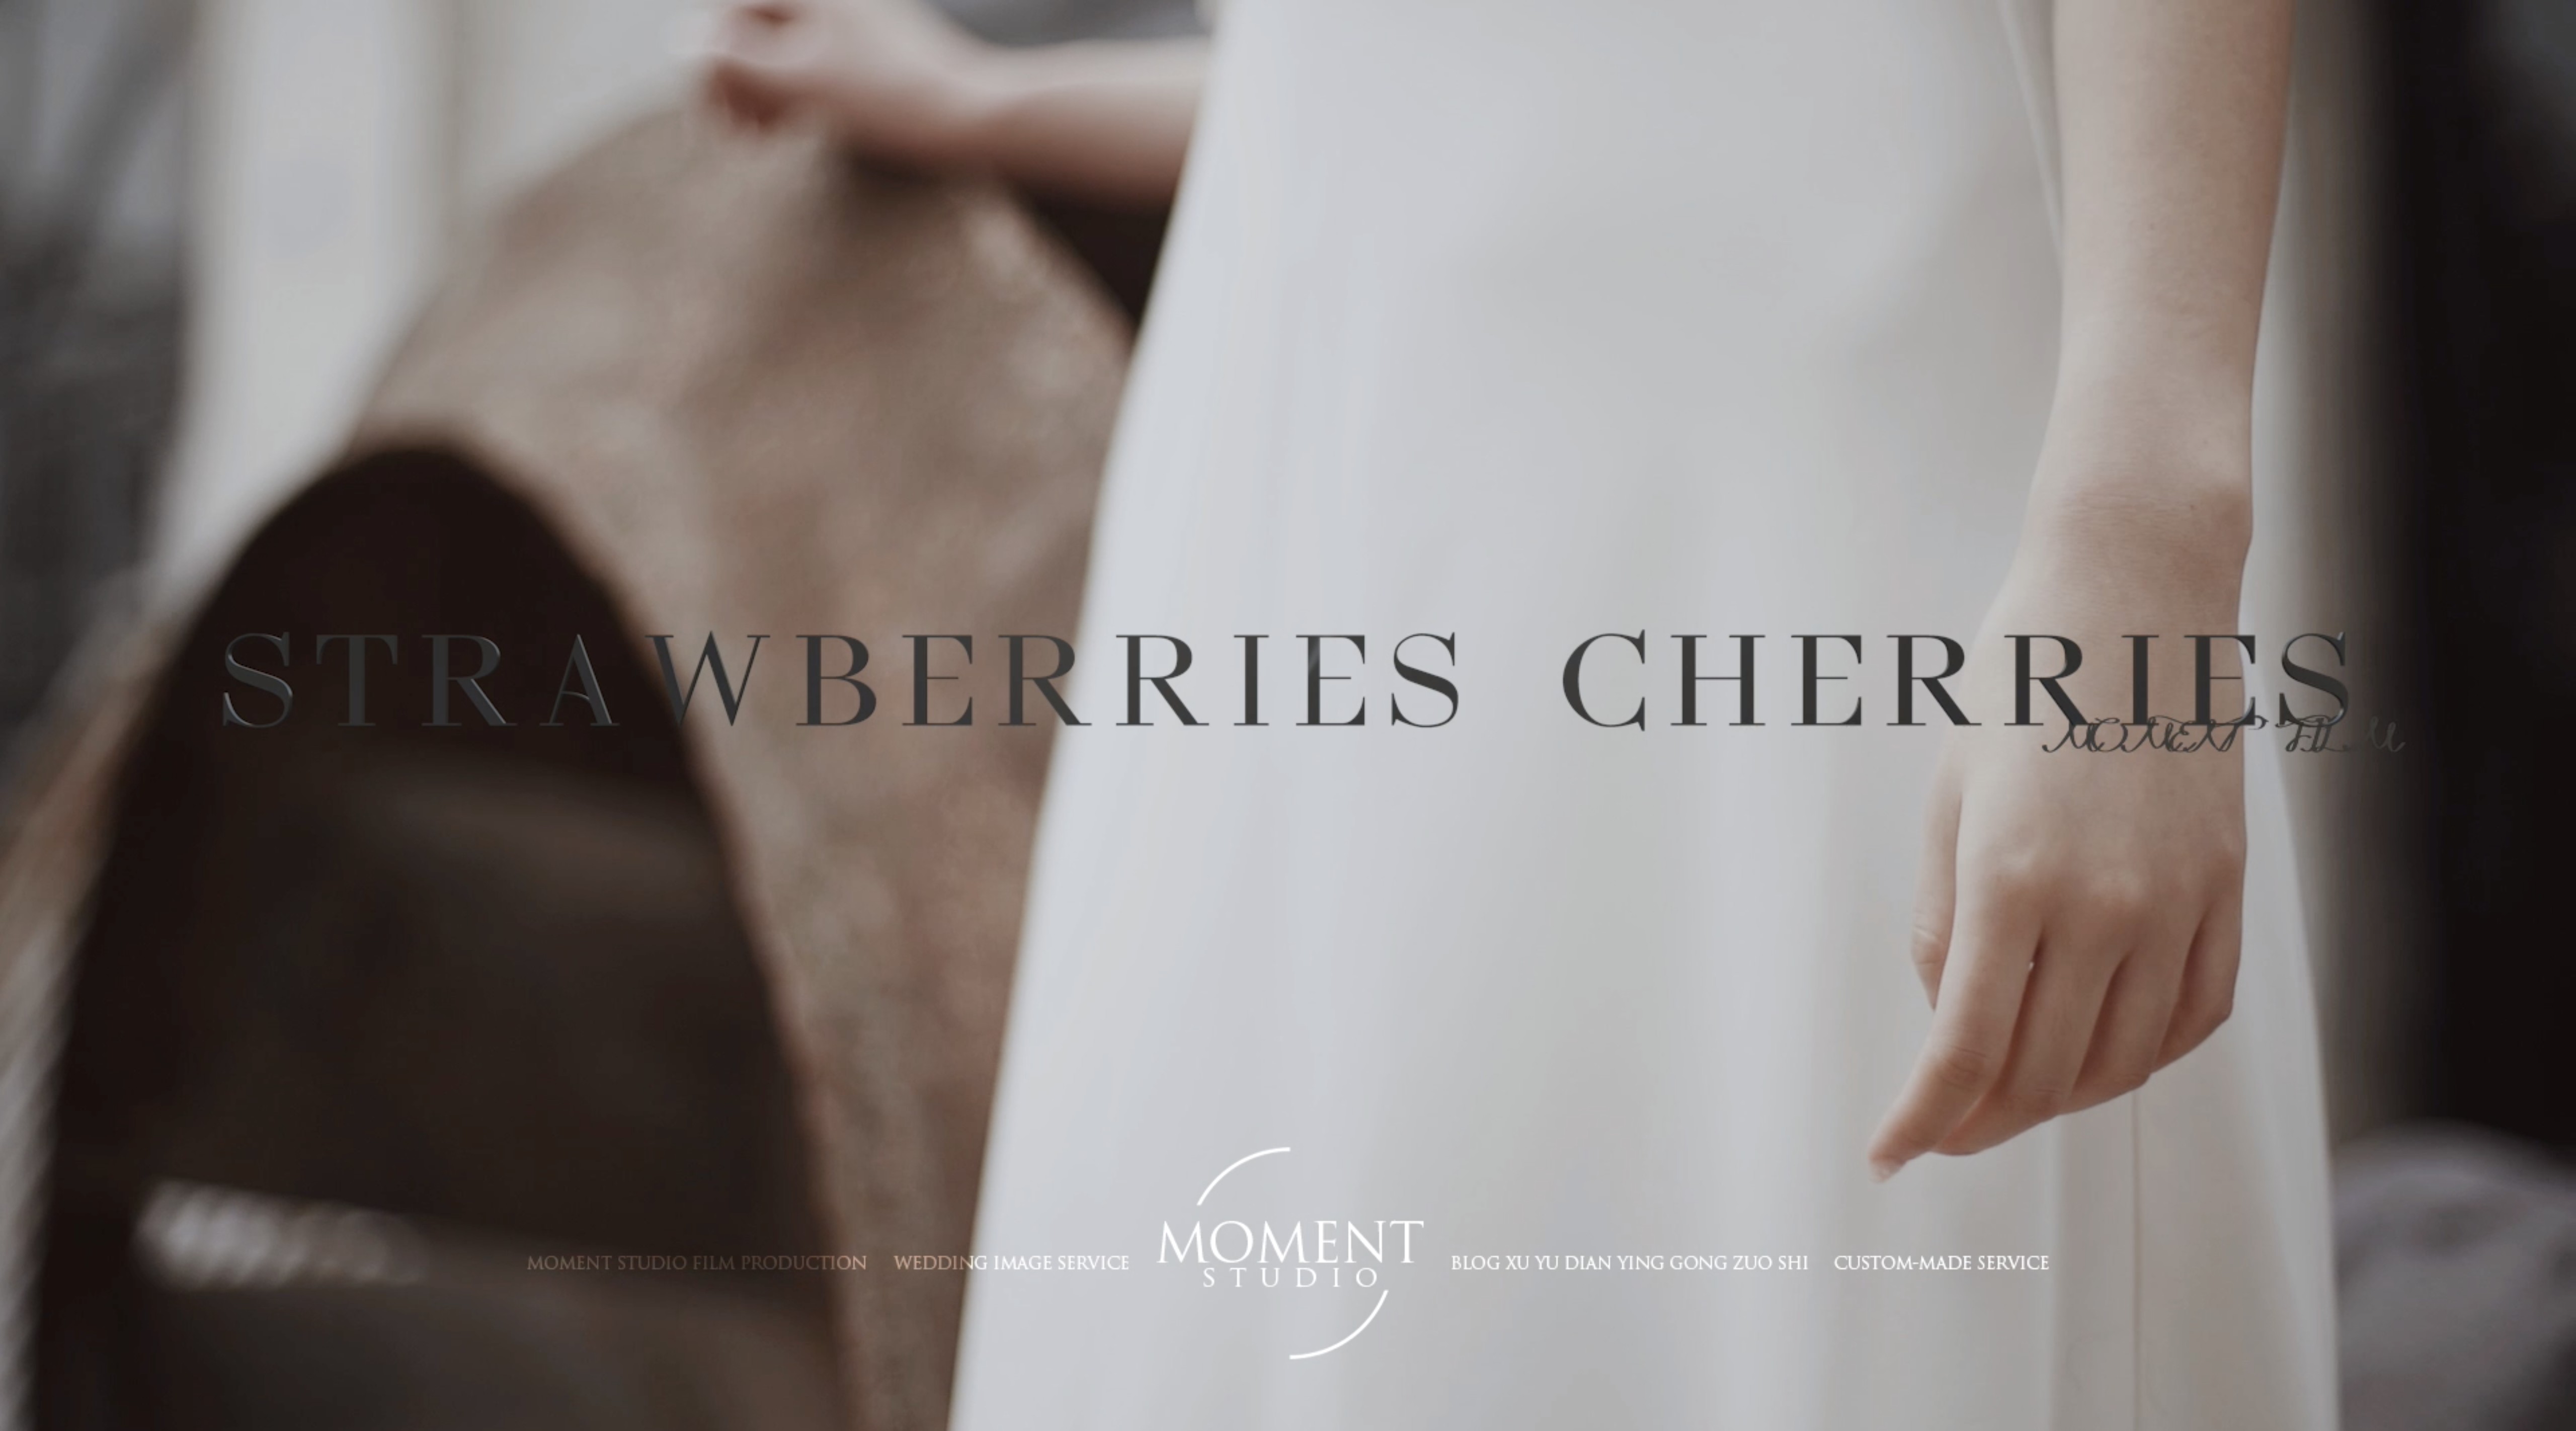 STRAWBERRIES CHERRIES | MOMENT STUDIO出品 